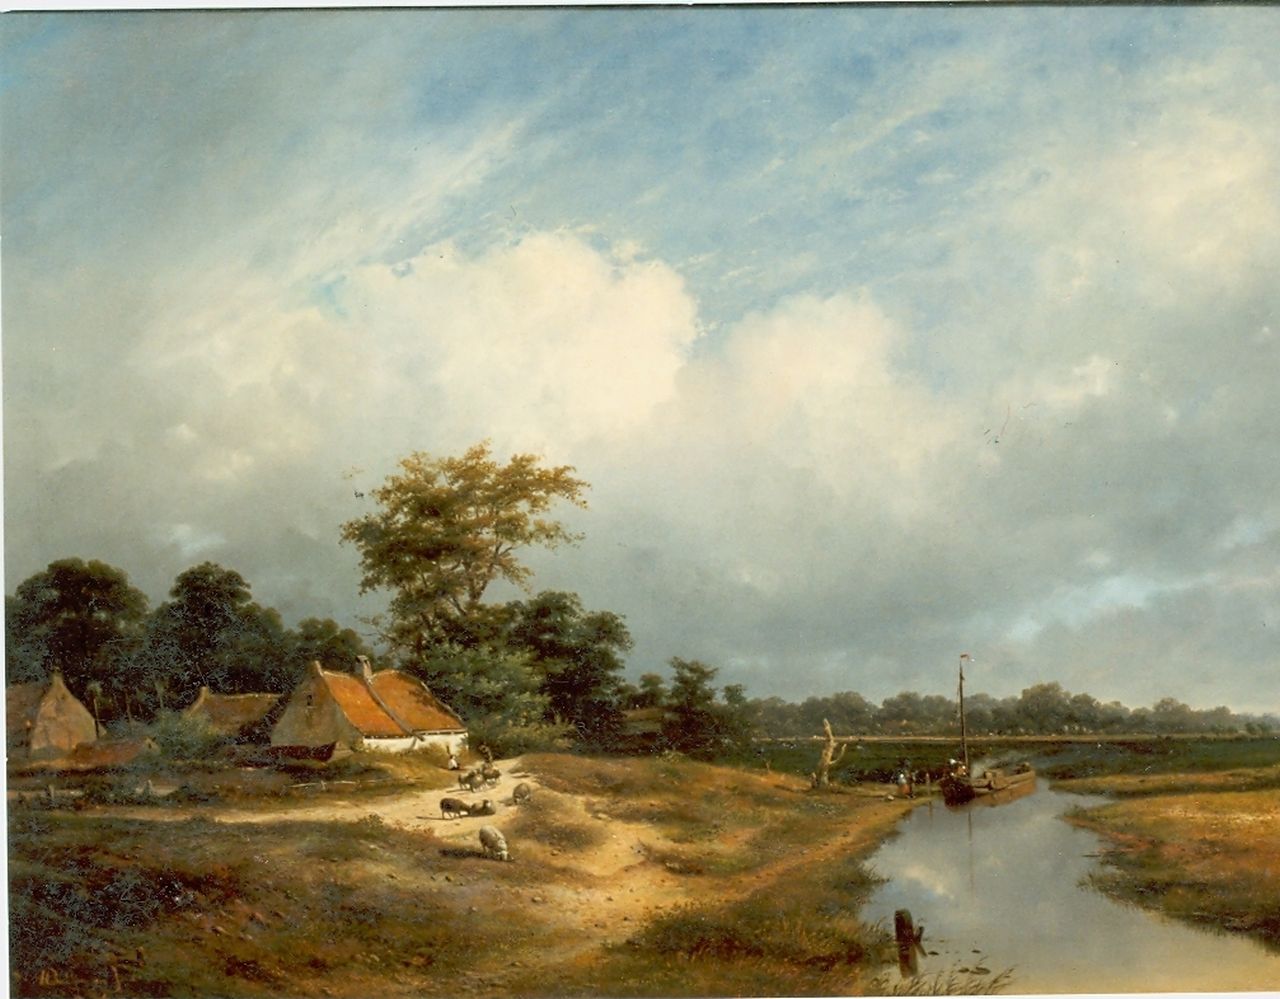 Sande Bakhuyzen H. van de | Hendrikus van de Sande Bakhuyzen, Landschap met boerderij aan water, olieverf op doek 74,2 x 100,0 cm, gesigneerd linksonder en gedateerd 1852